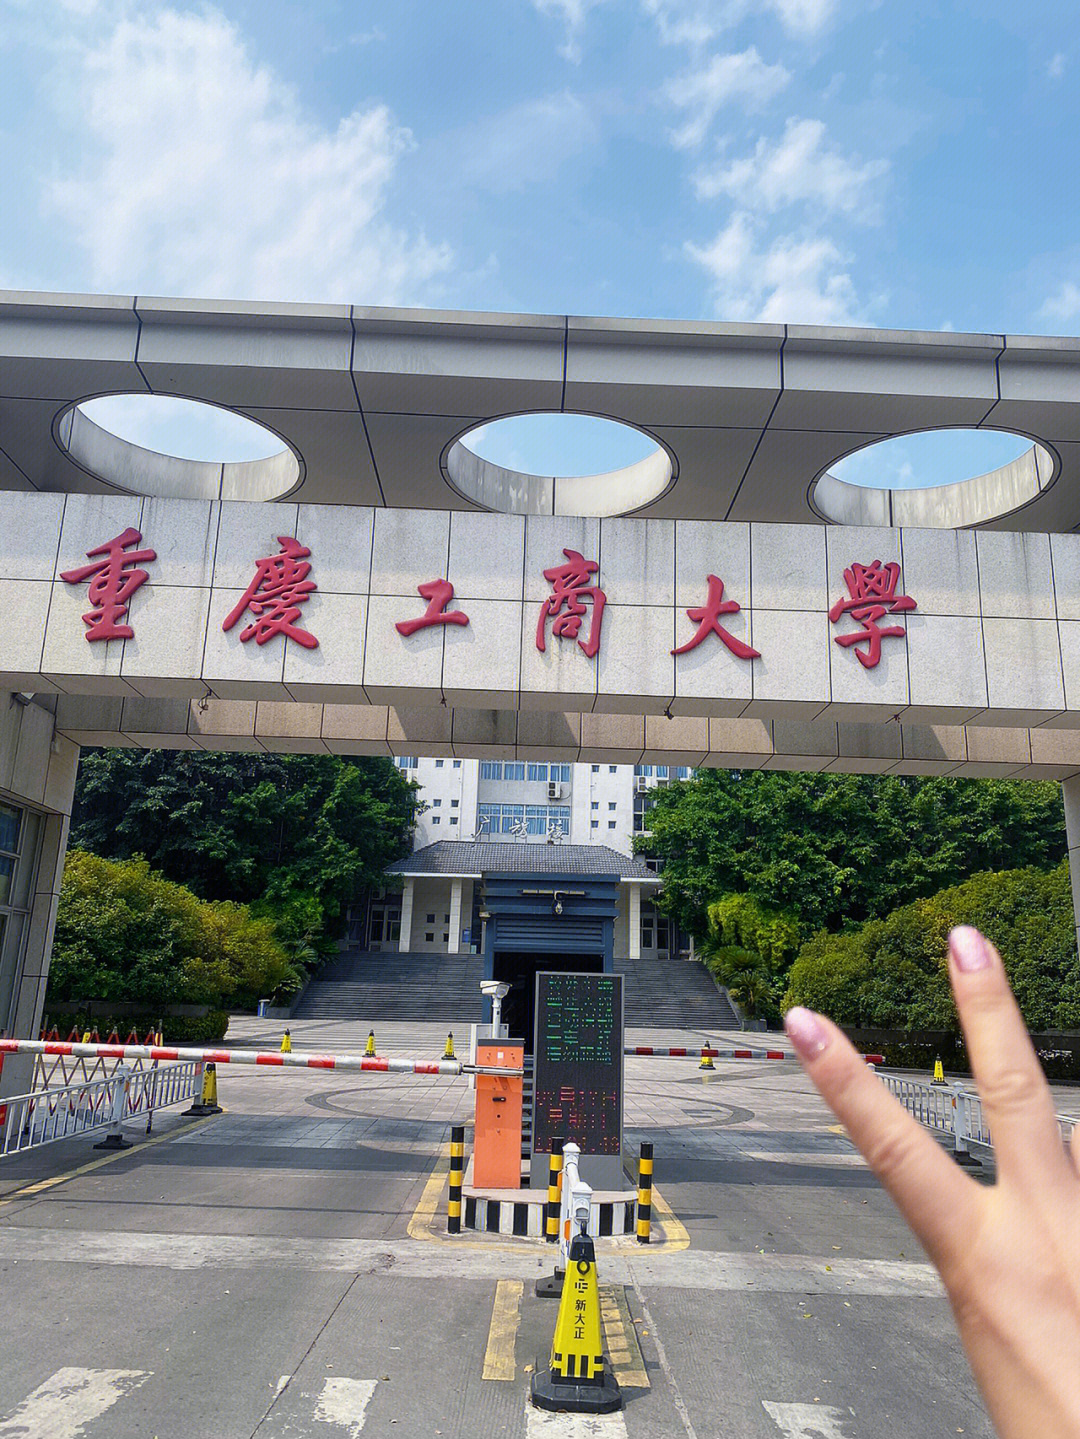 重庆工商大学肖战校区图片